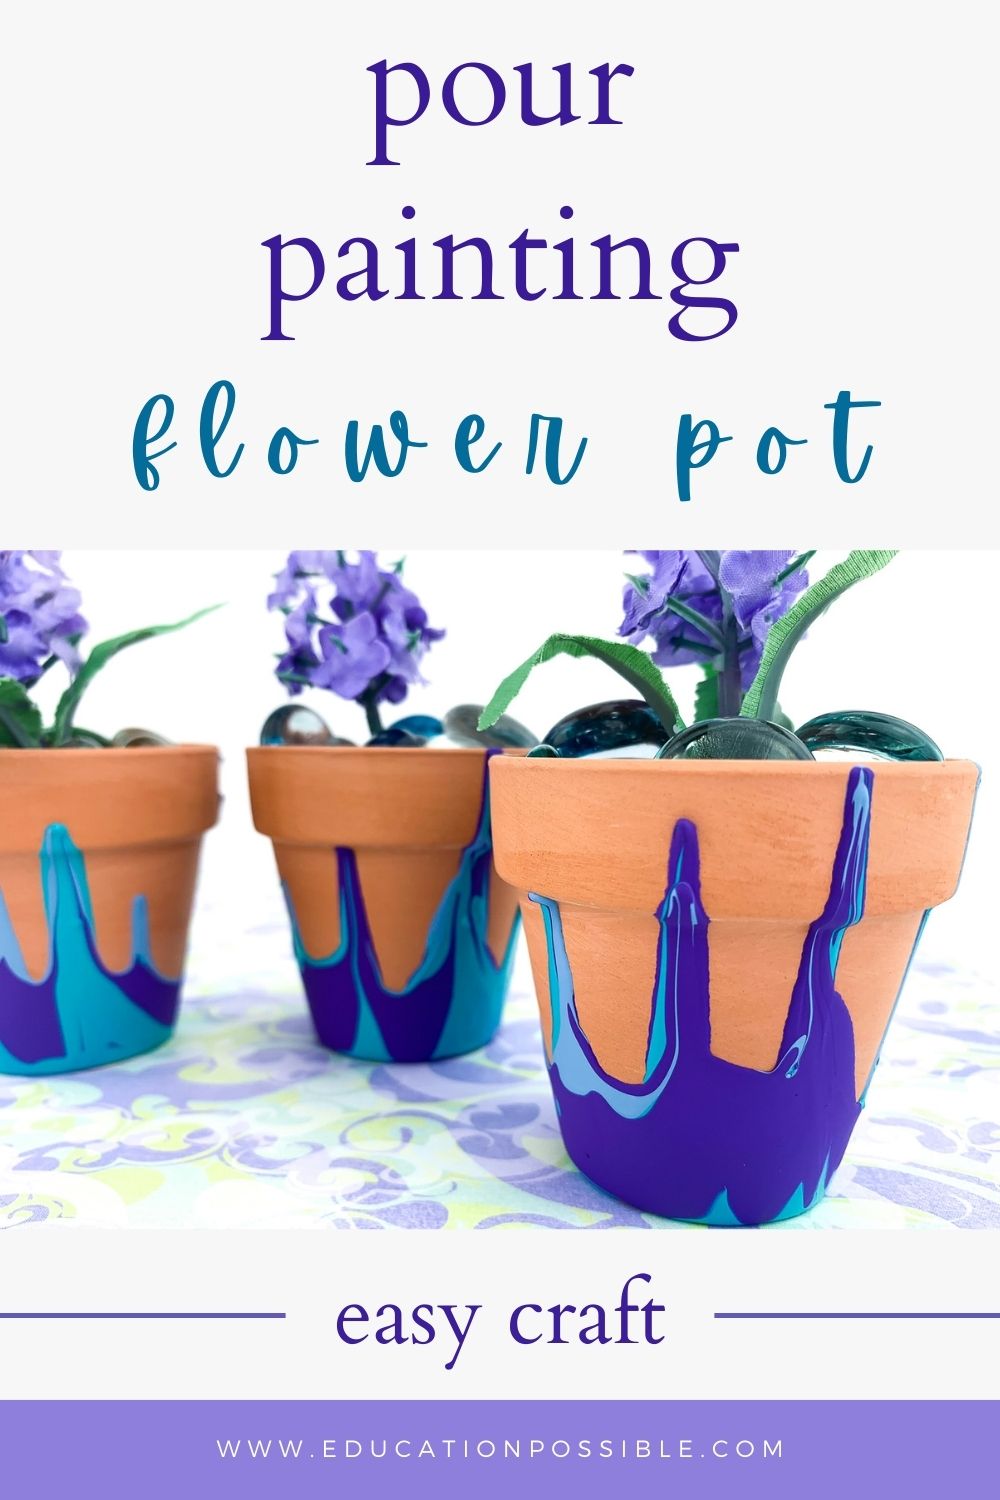 Pour Painting Flower Pot